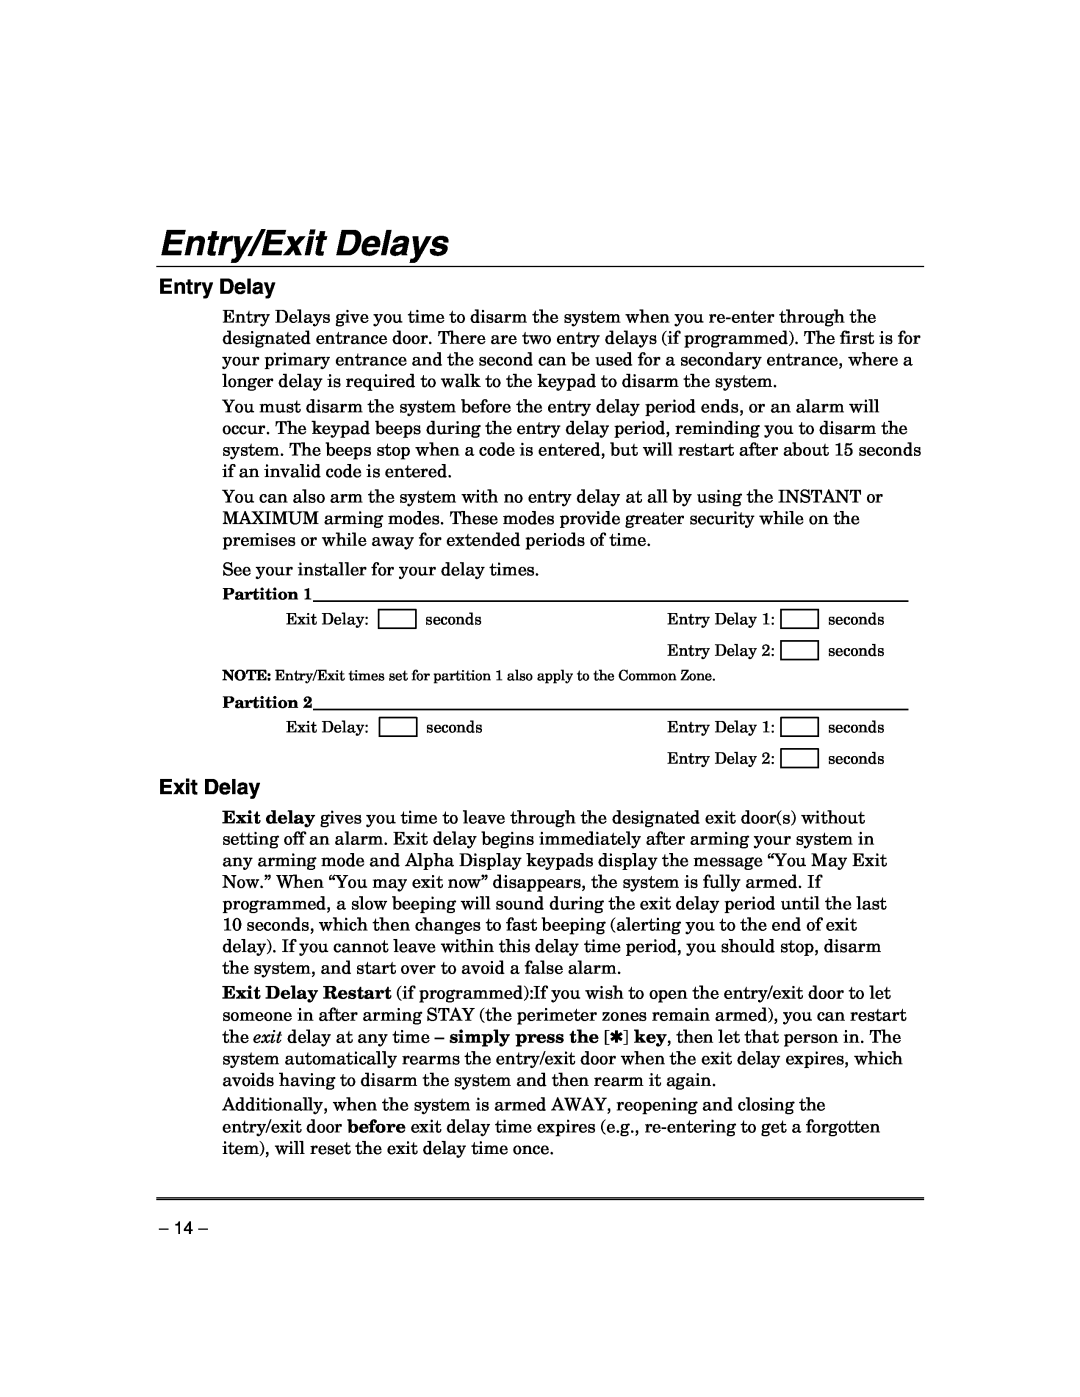 Honeywell VISTA-21IPSIA manual Entry/Exit Delays, Entry Delay 